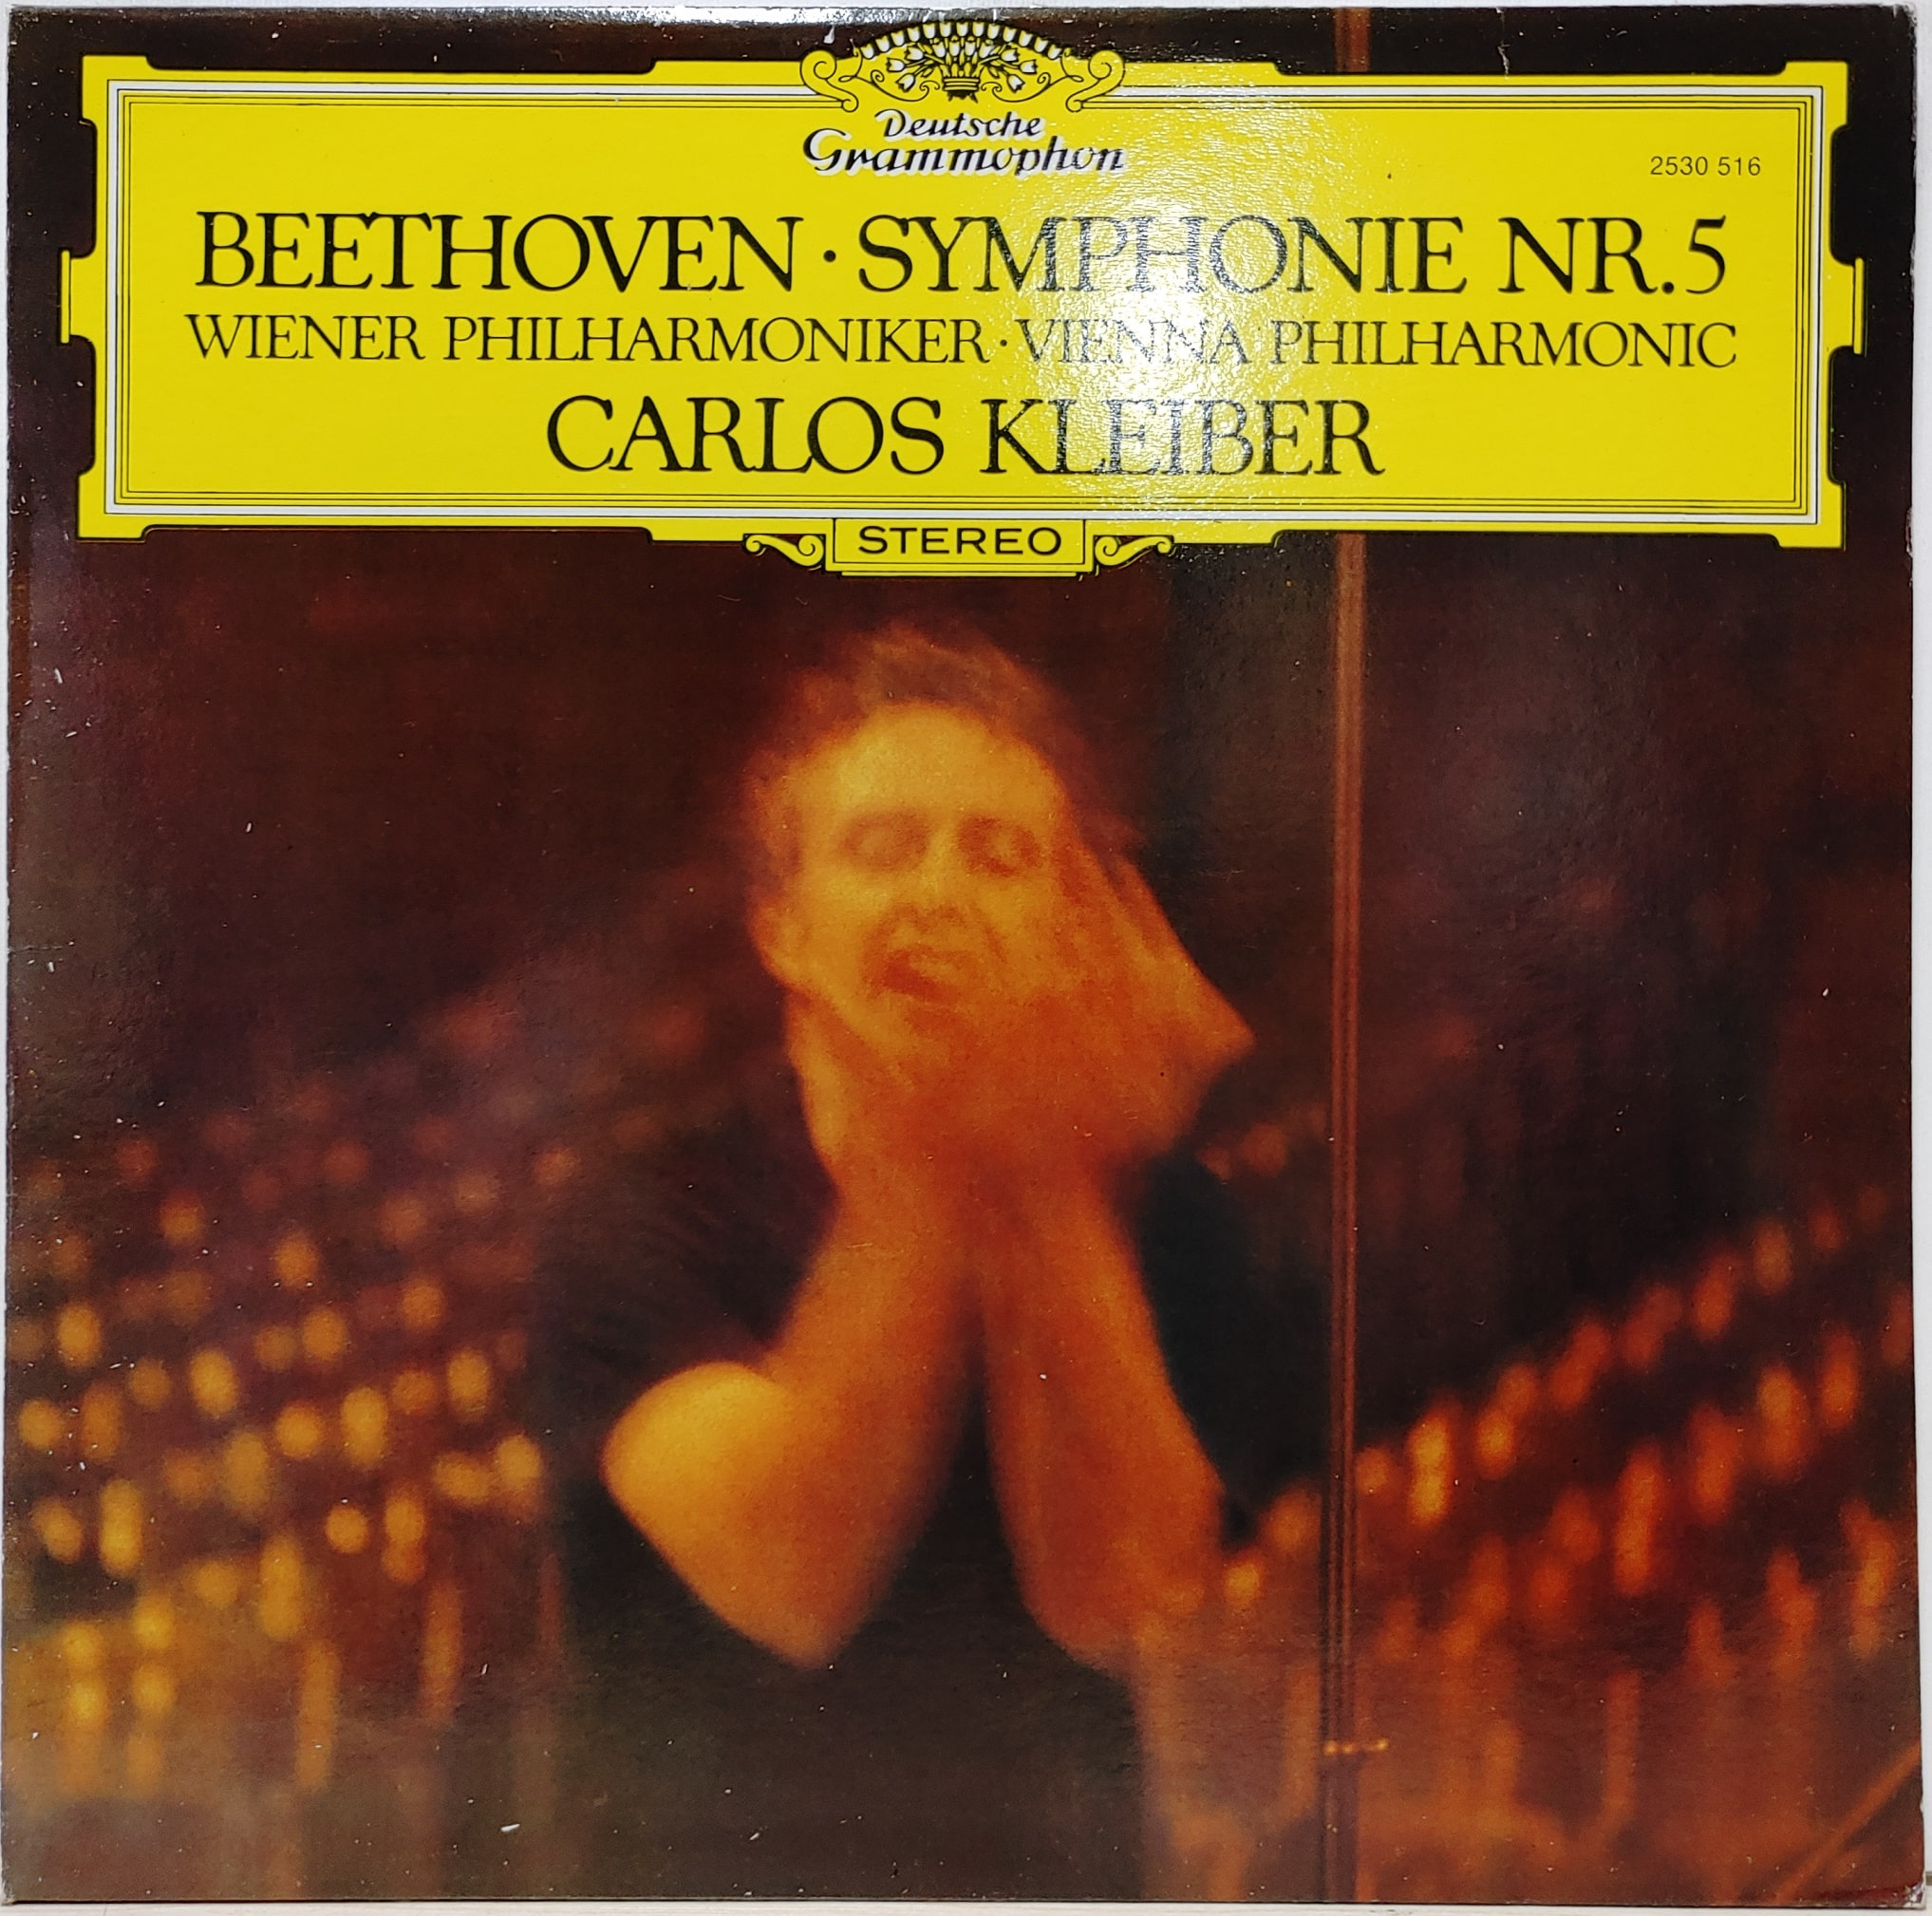 Beethoven / Symphonie Nr.5 Carlos Kleiber